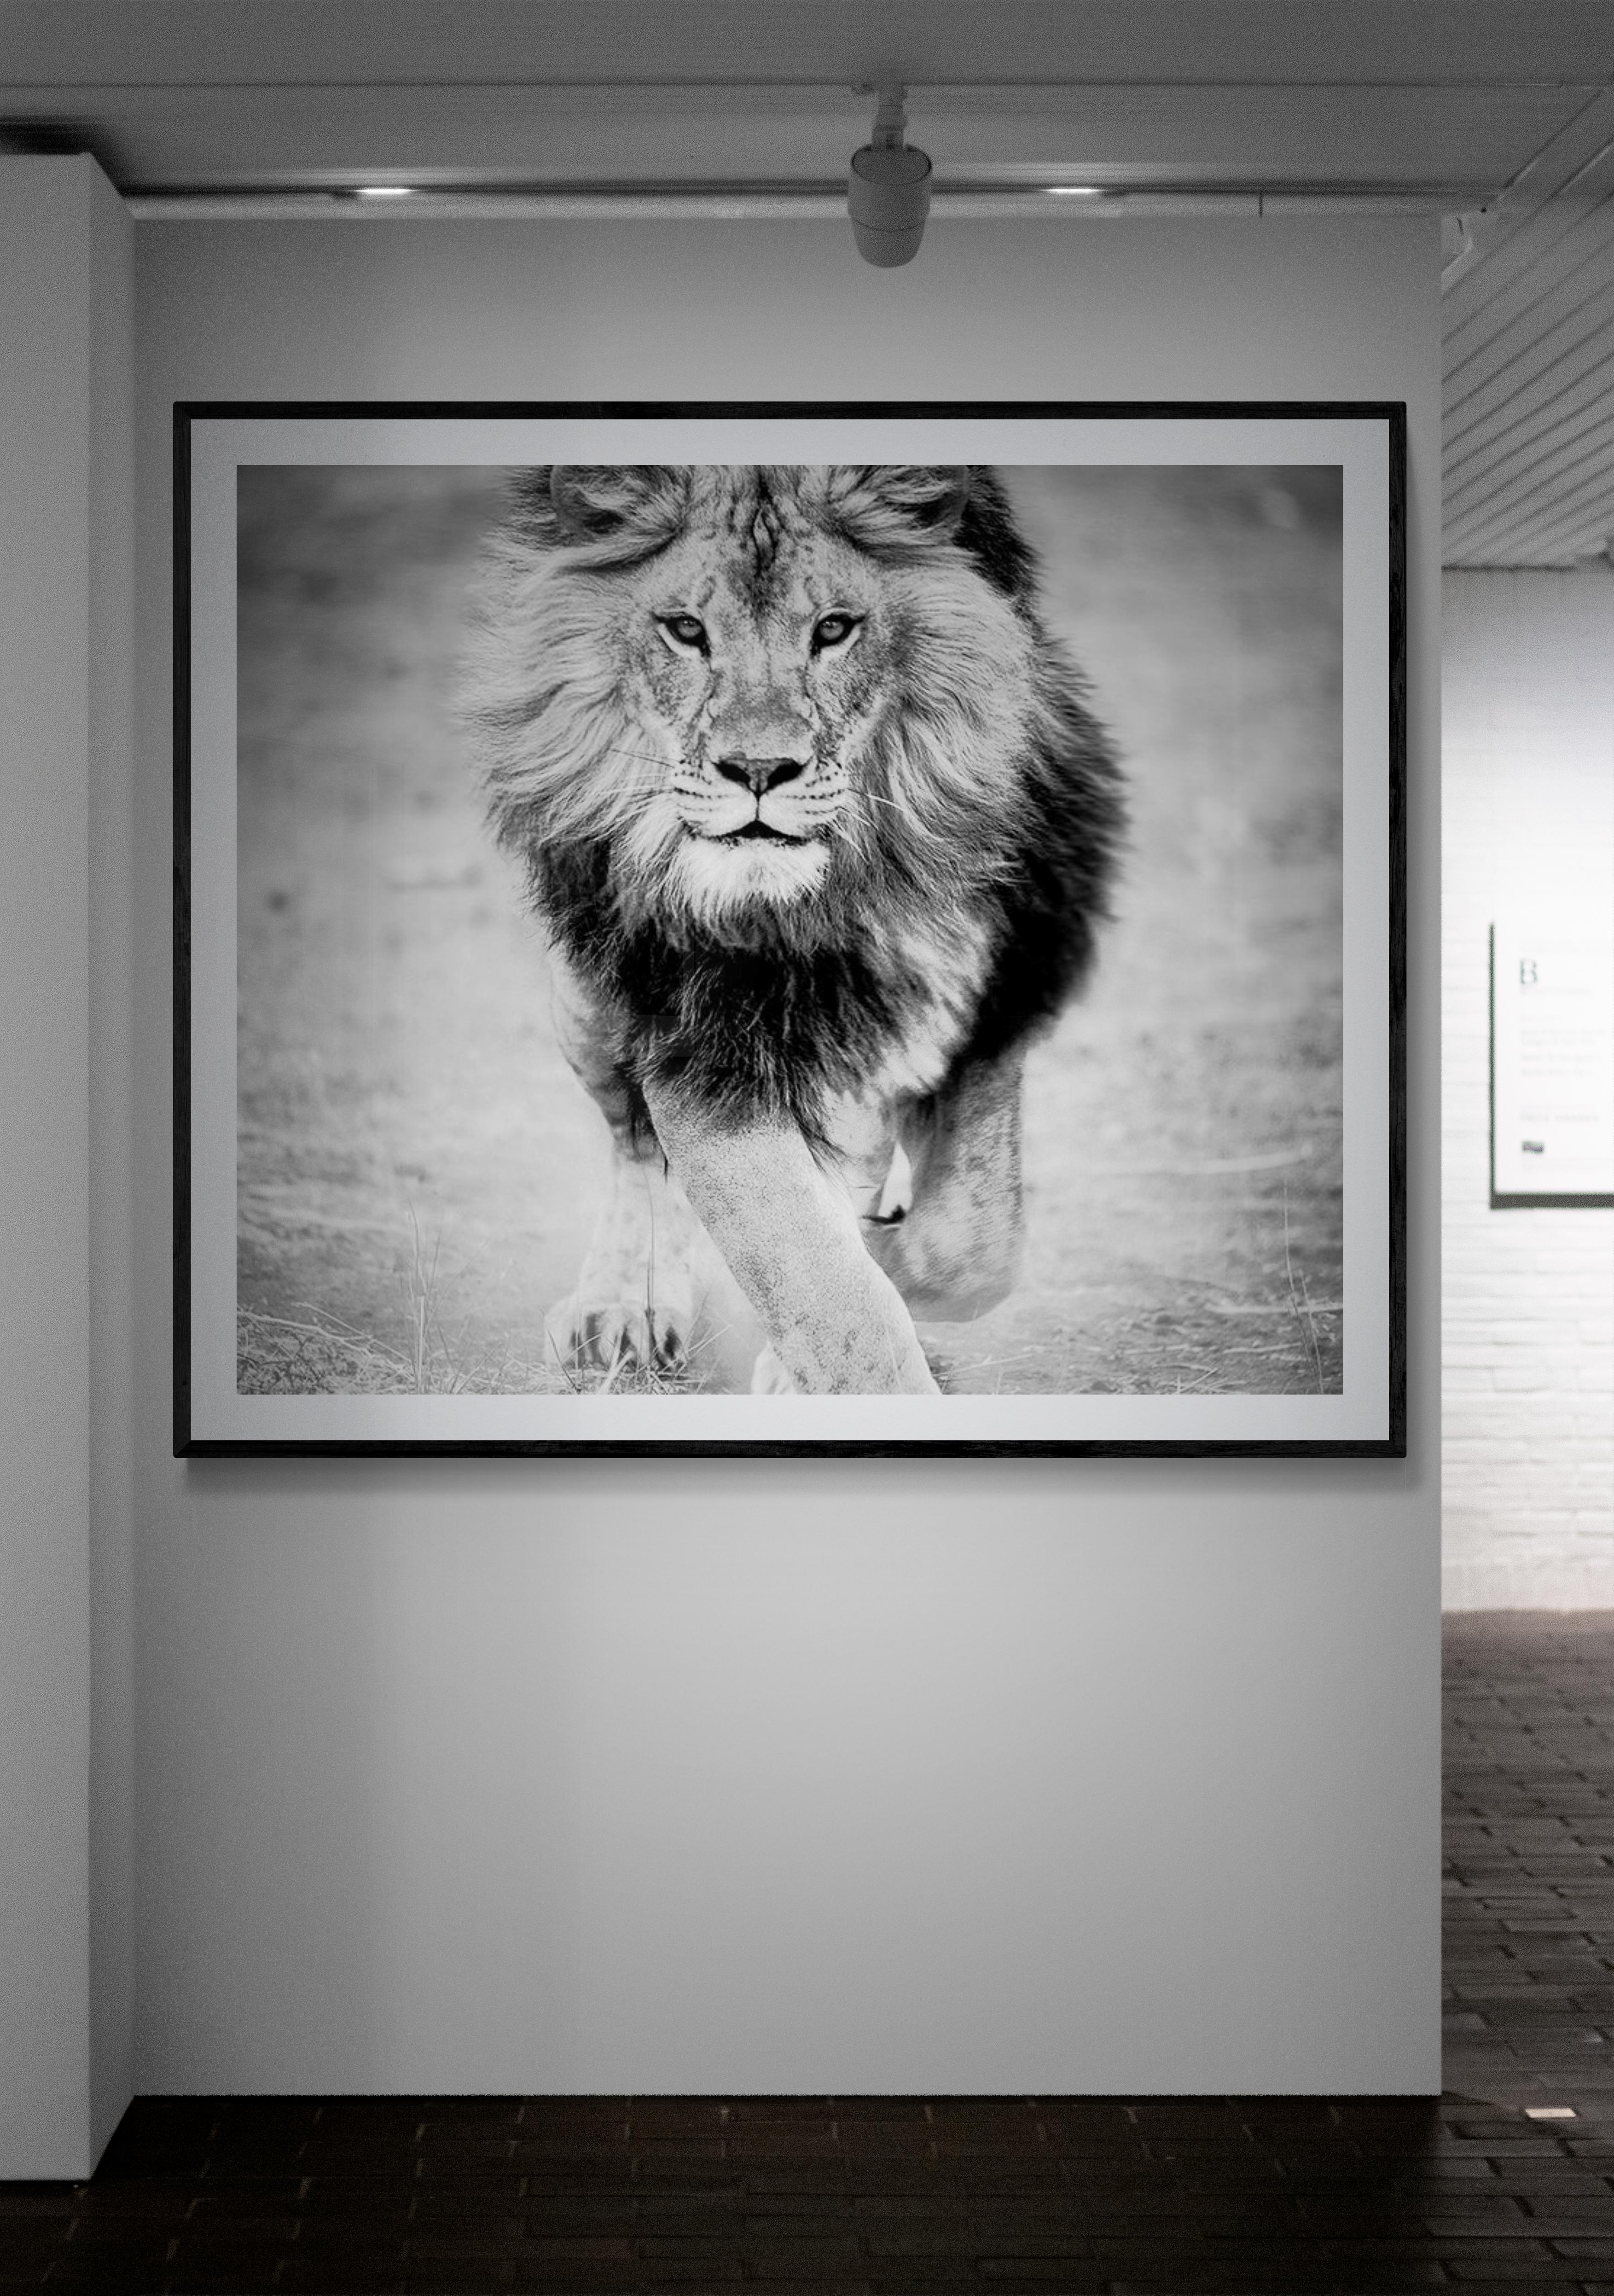 Dies ist ein zeitgenössisches Foto eines afrikanischen Löwen, aufgenommen von Shane Russeck.
36x48  Auflage von 12
Signiert und nummeriert 
Dies ist der letzte Teil der Ausgabe
Gedruckt auf Archiv-Glanzpapier.  

Shane Russeck hat sich den Ruf